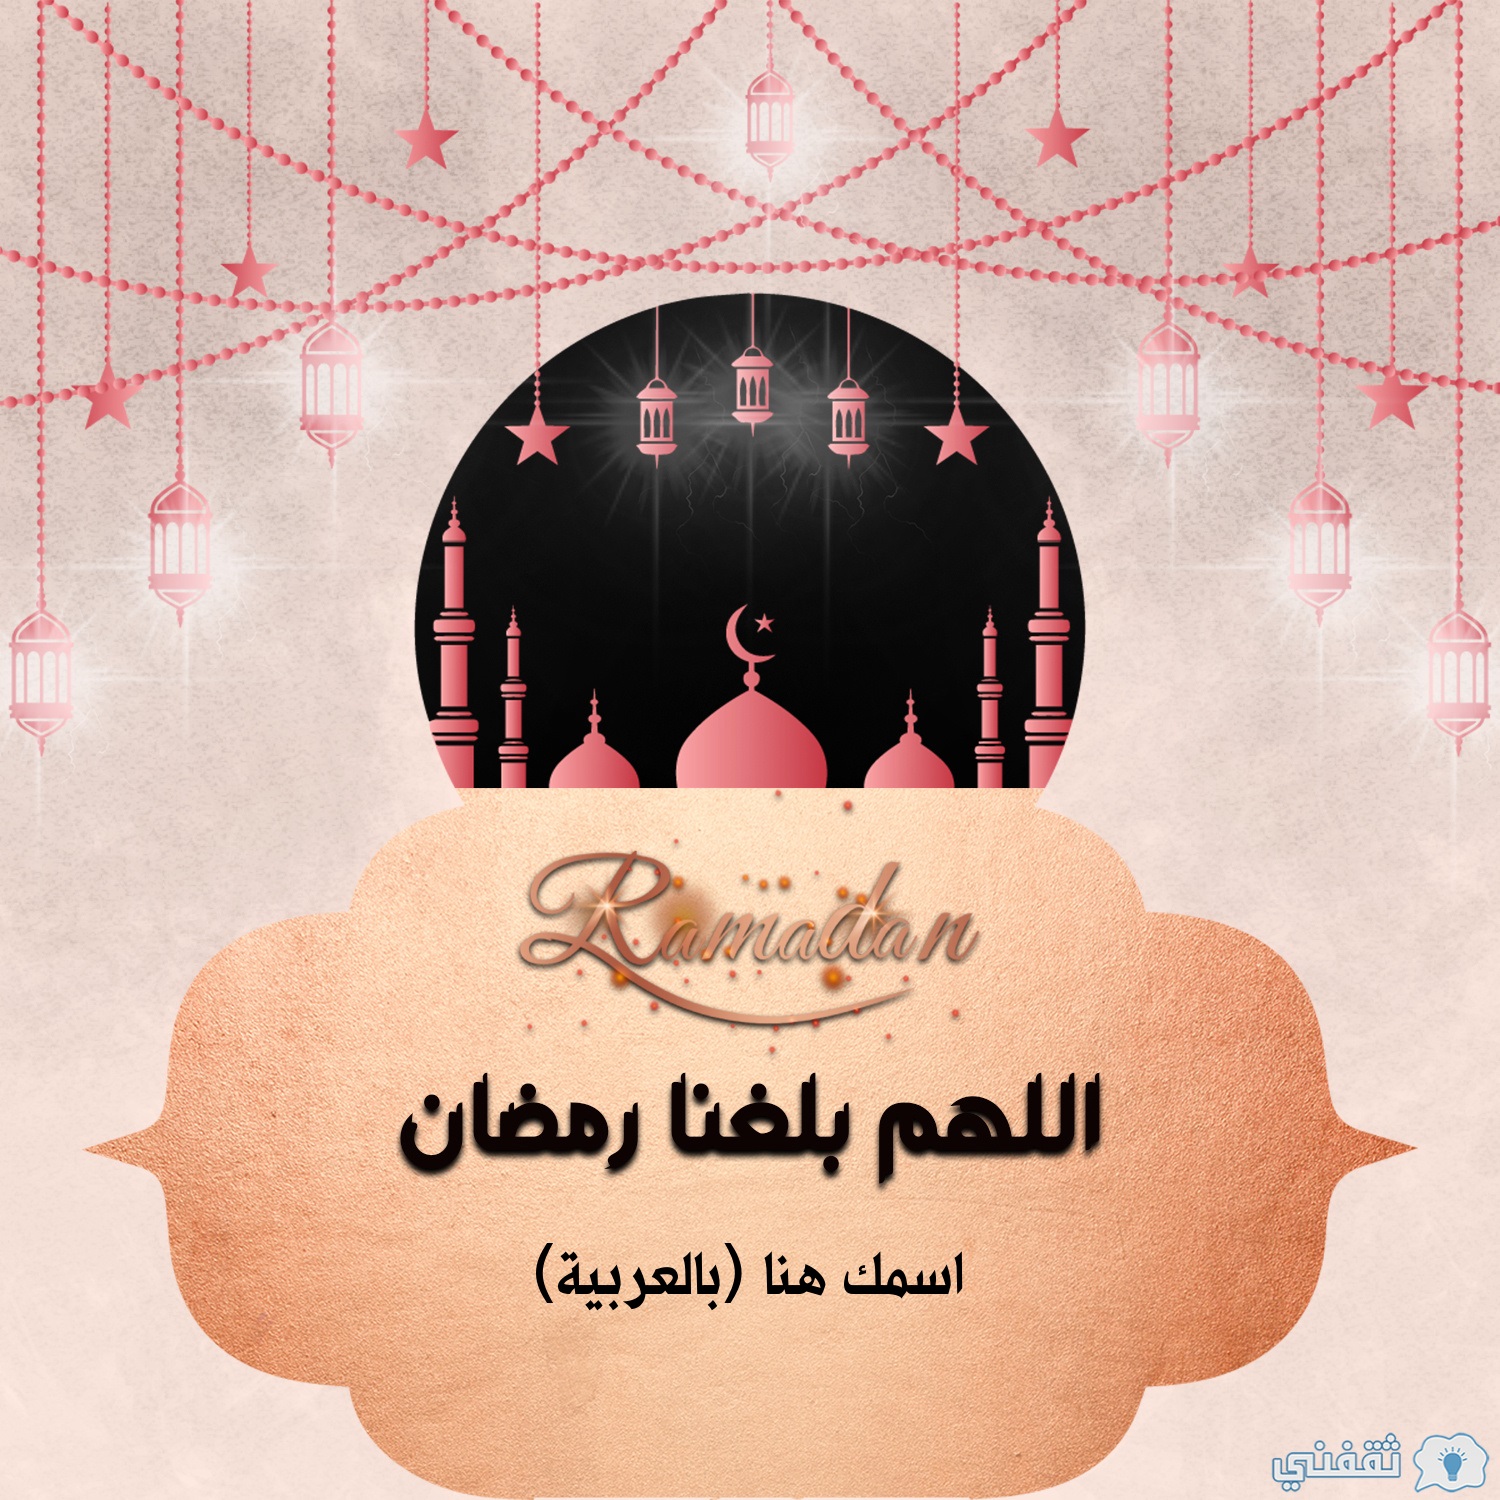 تهنئة رمضان مع كتابة الاسم